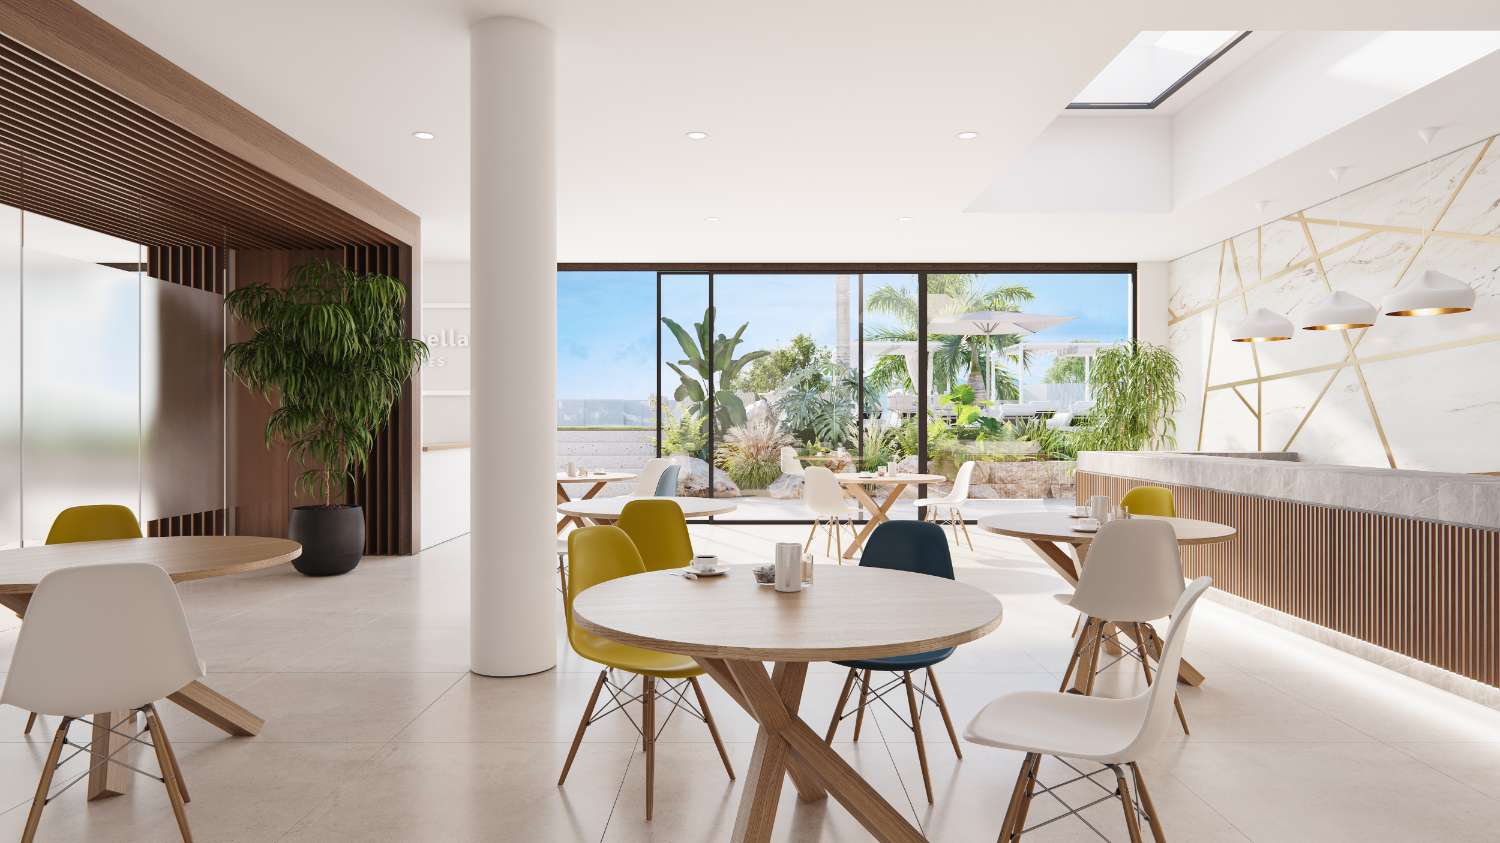 Luxuriöse Wohnung in Marbella, Erdgeschoss mit privatem Garten in Urbanisation in der ersten Reihe des Golfplatzes